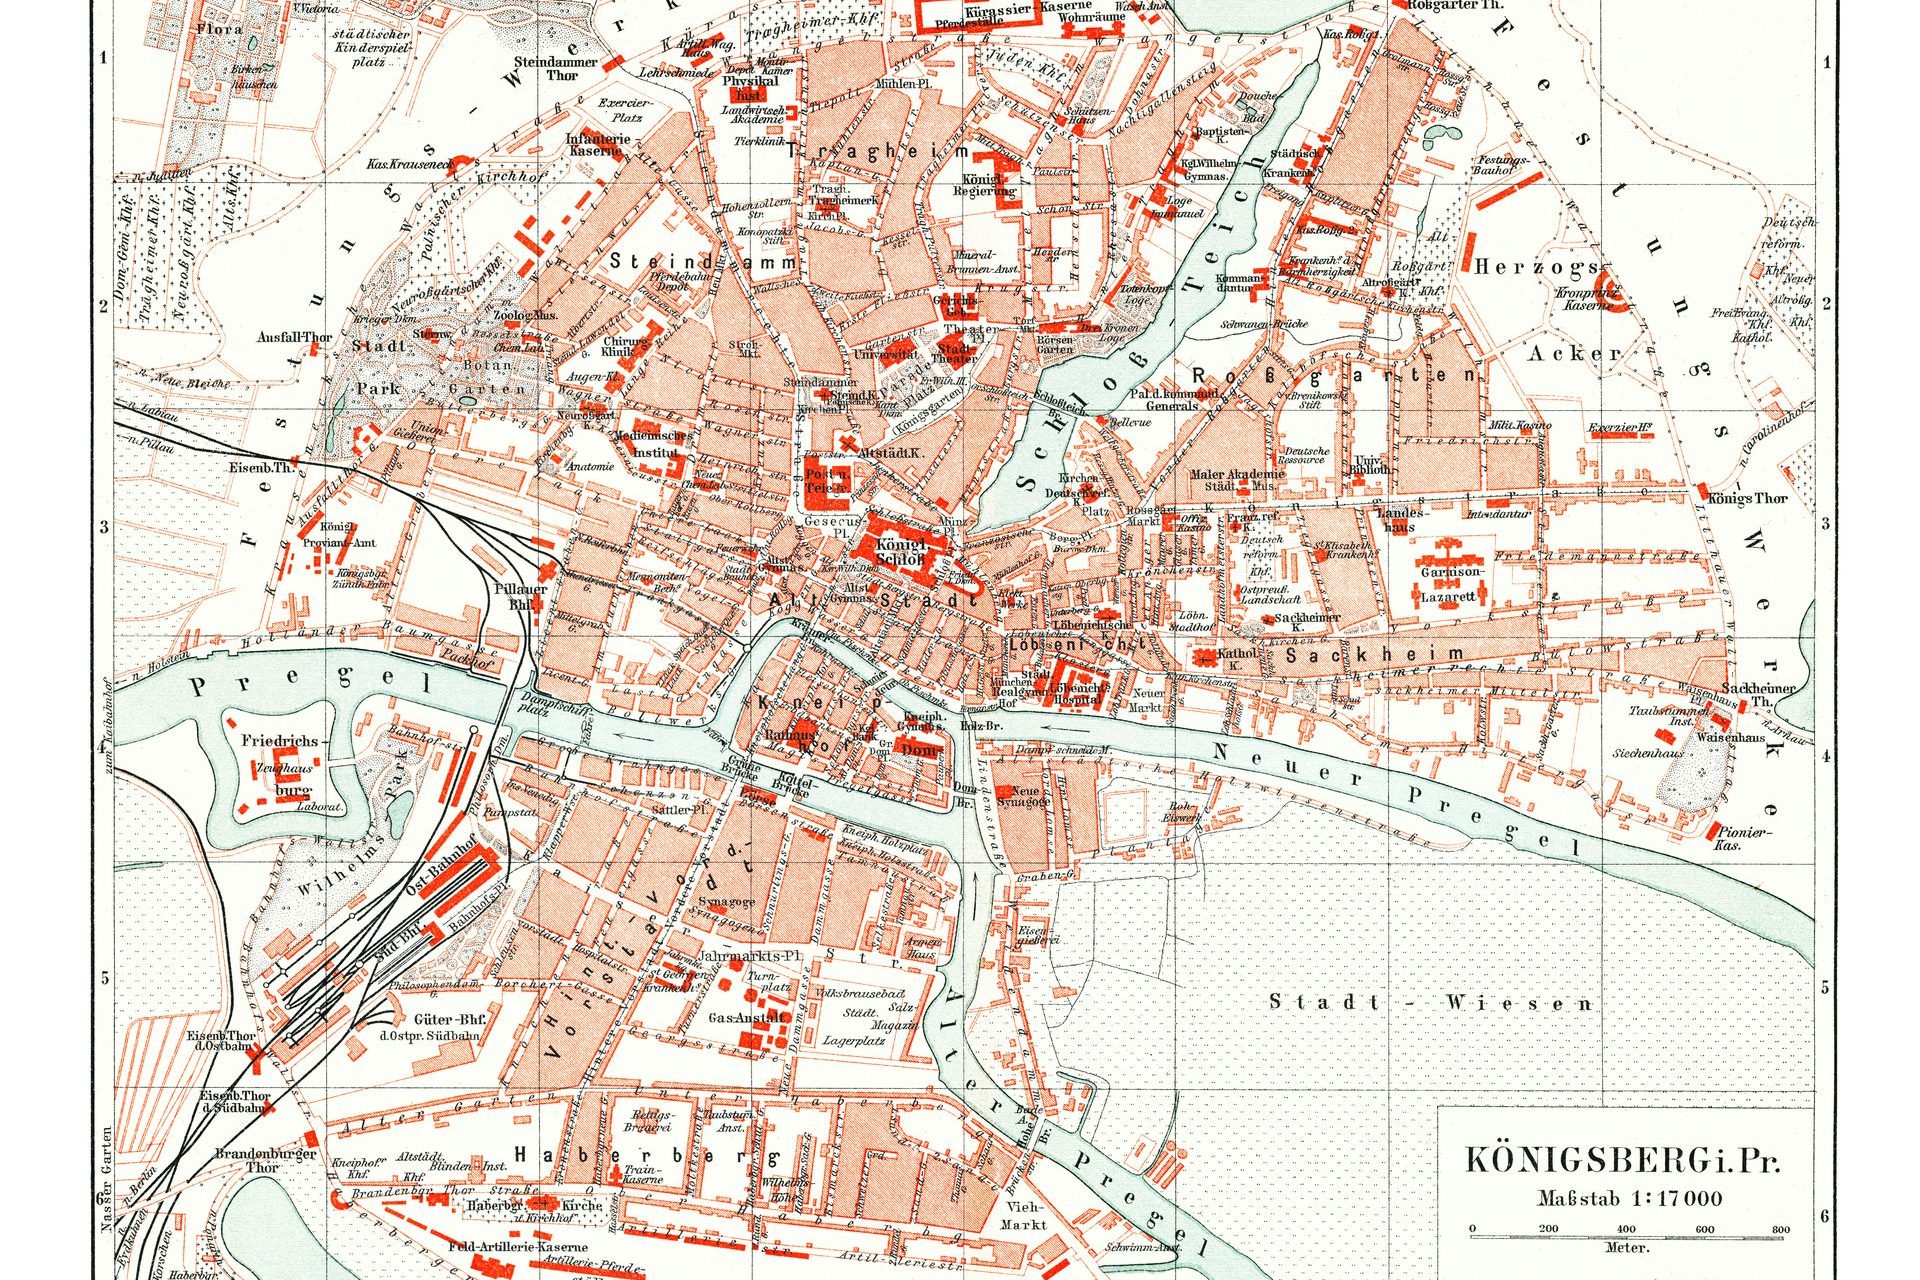 When Kaliningrad was called Königsberg